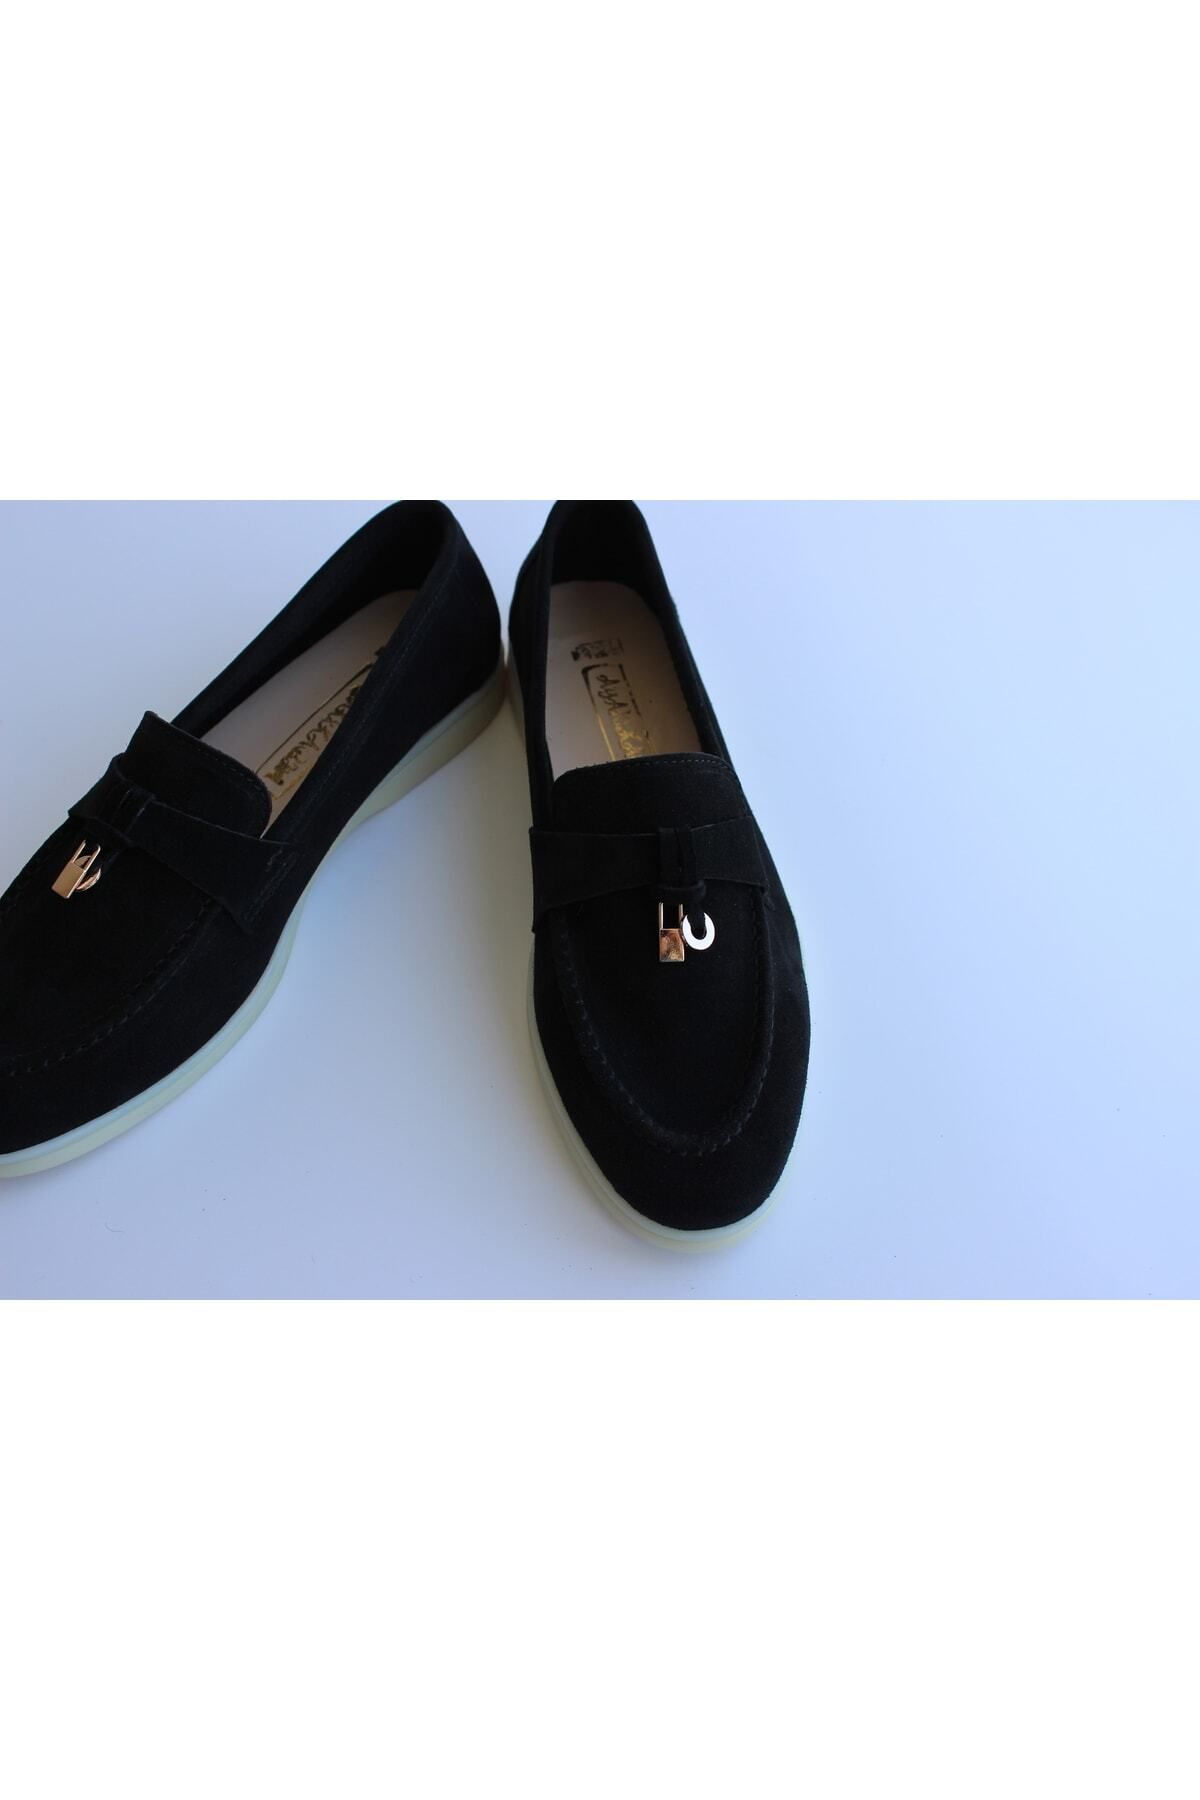 AYAK&KABIM Hakiki Deri Siyah Günlük Kadın Ayakkabı Loafer Makosen